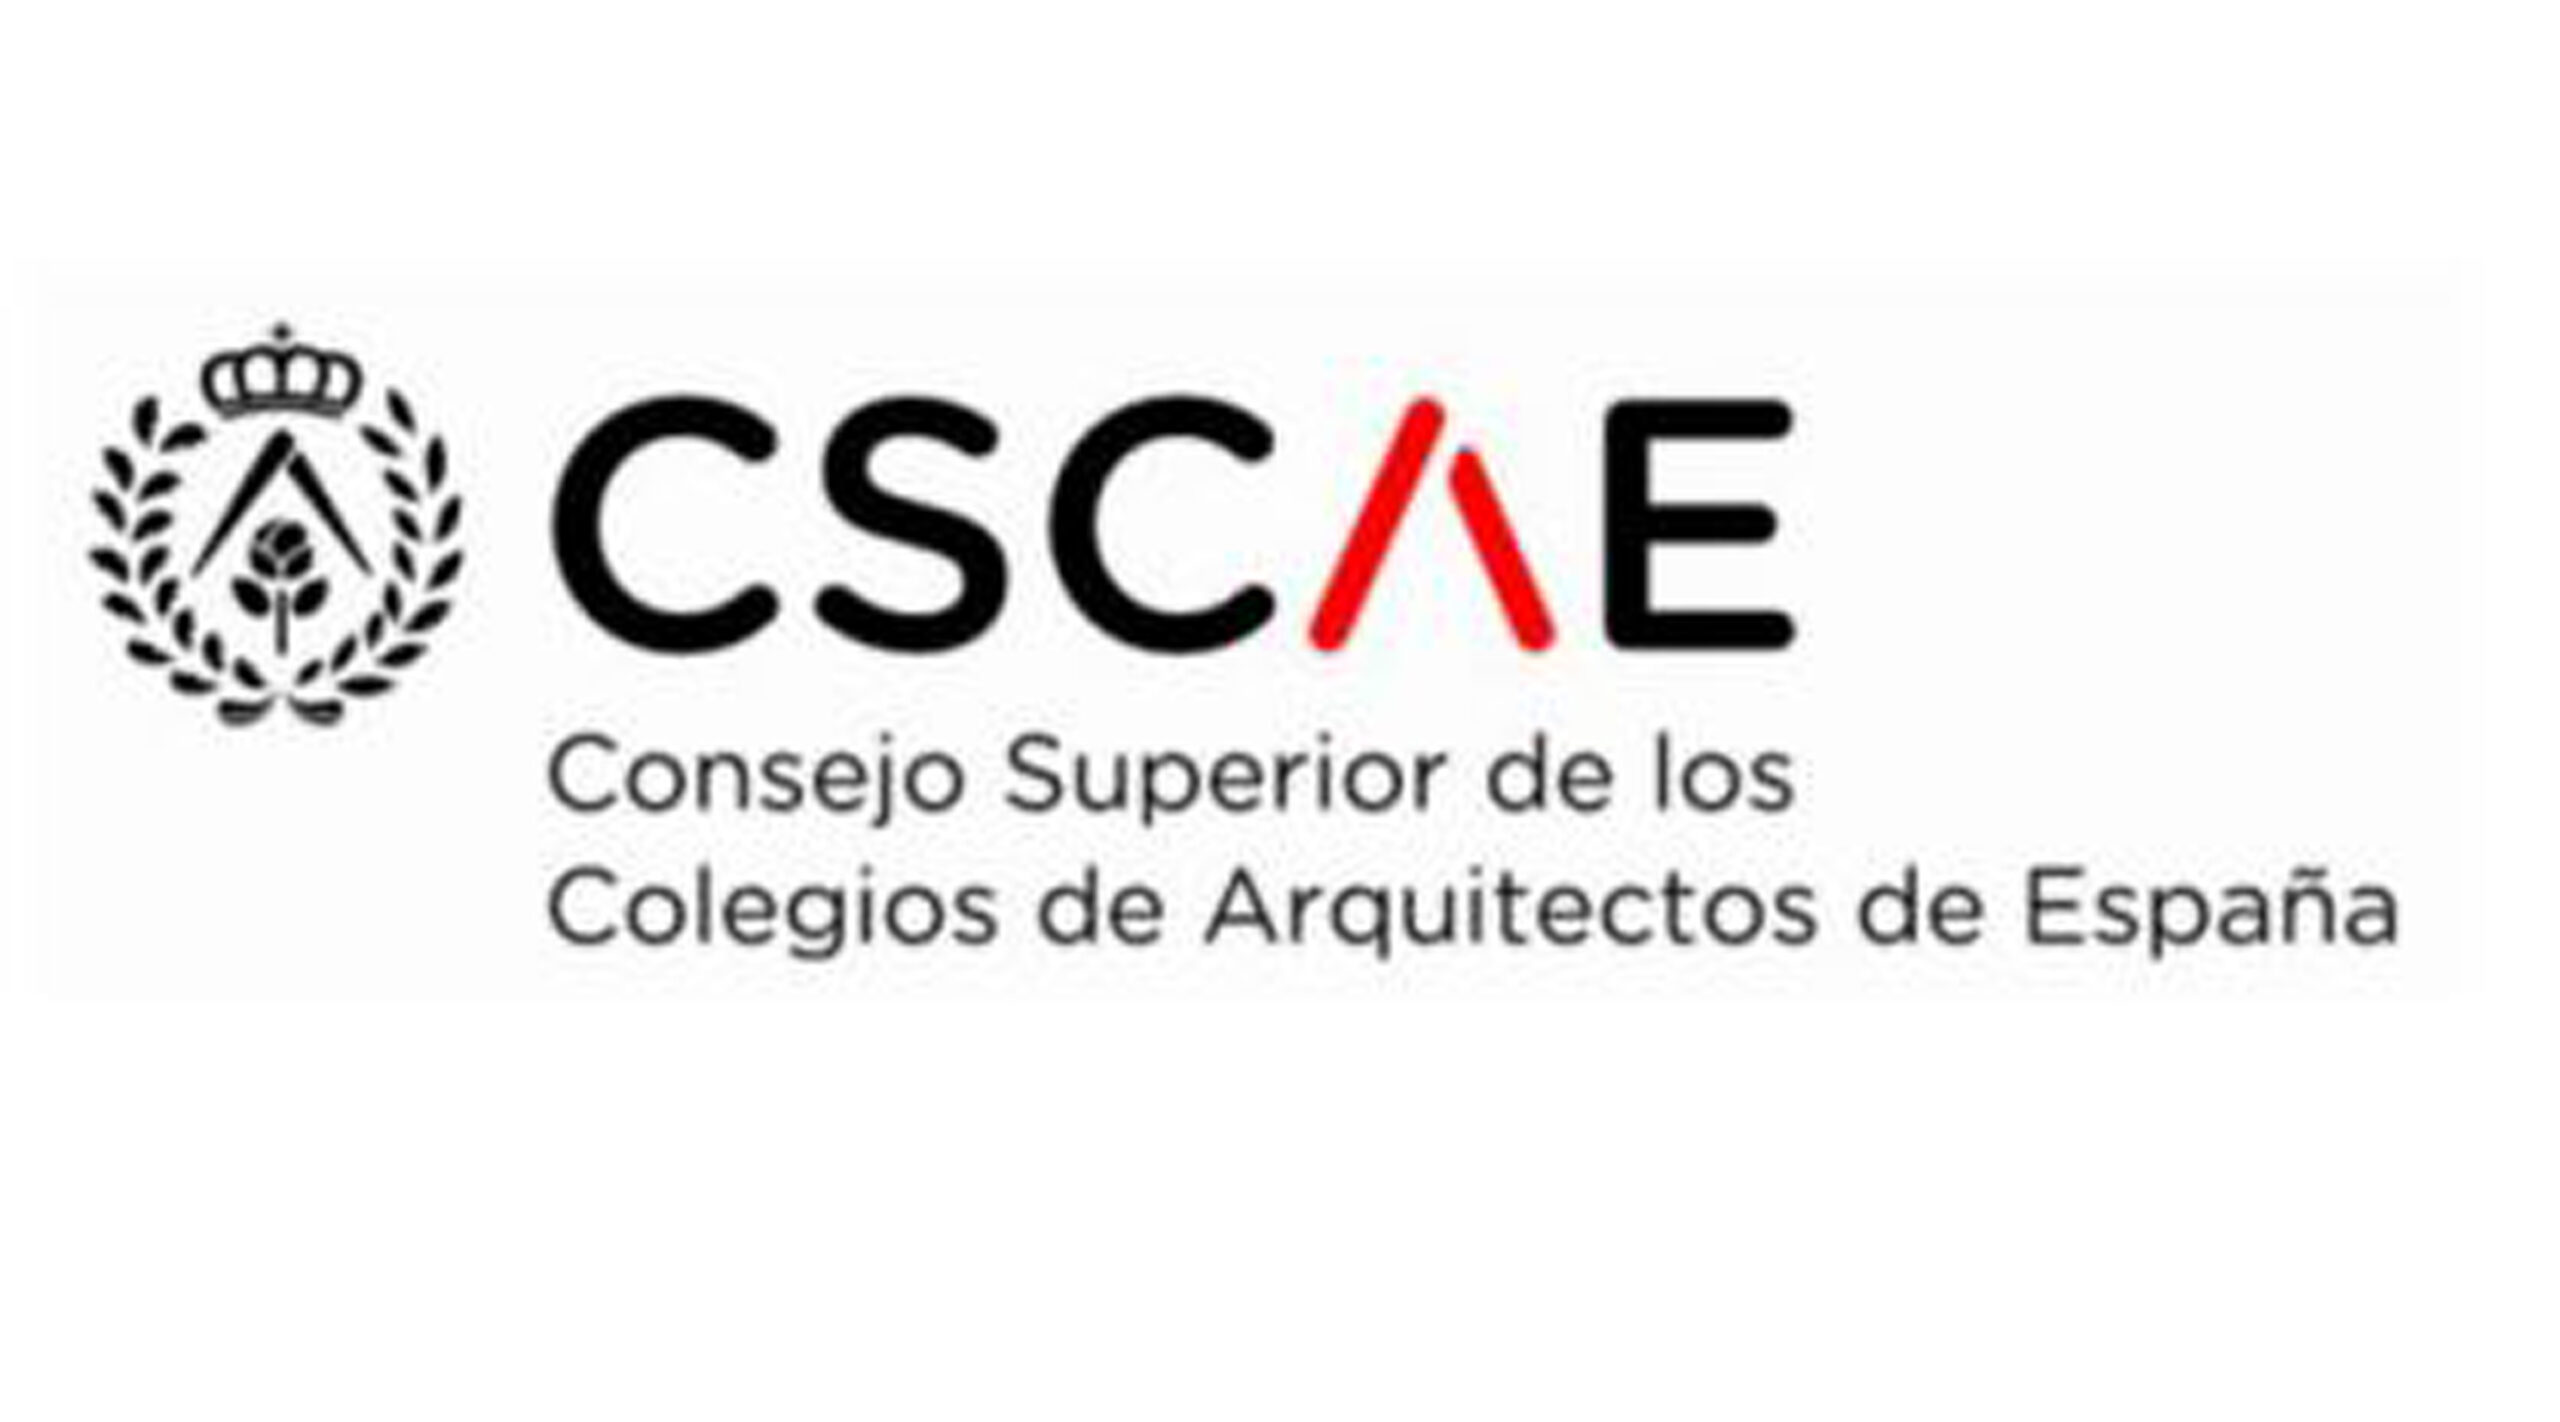 Consejo Superior de los Colegios de Arquitectos de España – CSCAE